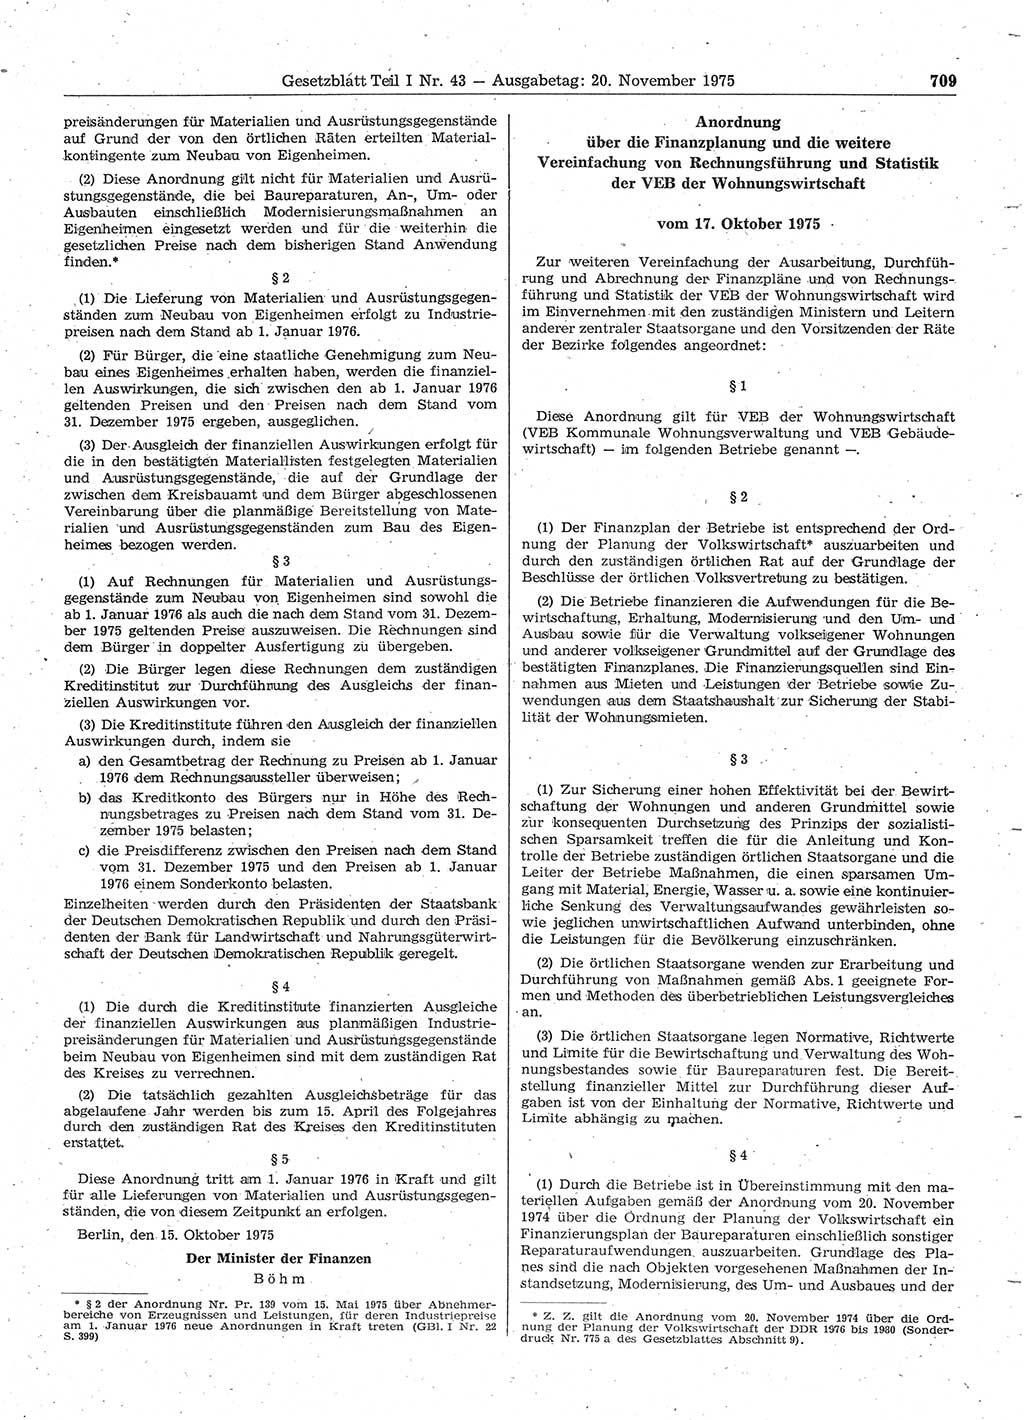 Gesetzblatt (GBl.) der Deutschen Demokratischen Republik (DDR) Teil Ⅰ 1975, Seite 709 (GBl. DDR Ⅰ 1975, S. 709)